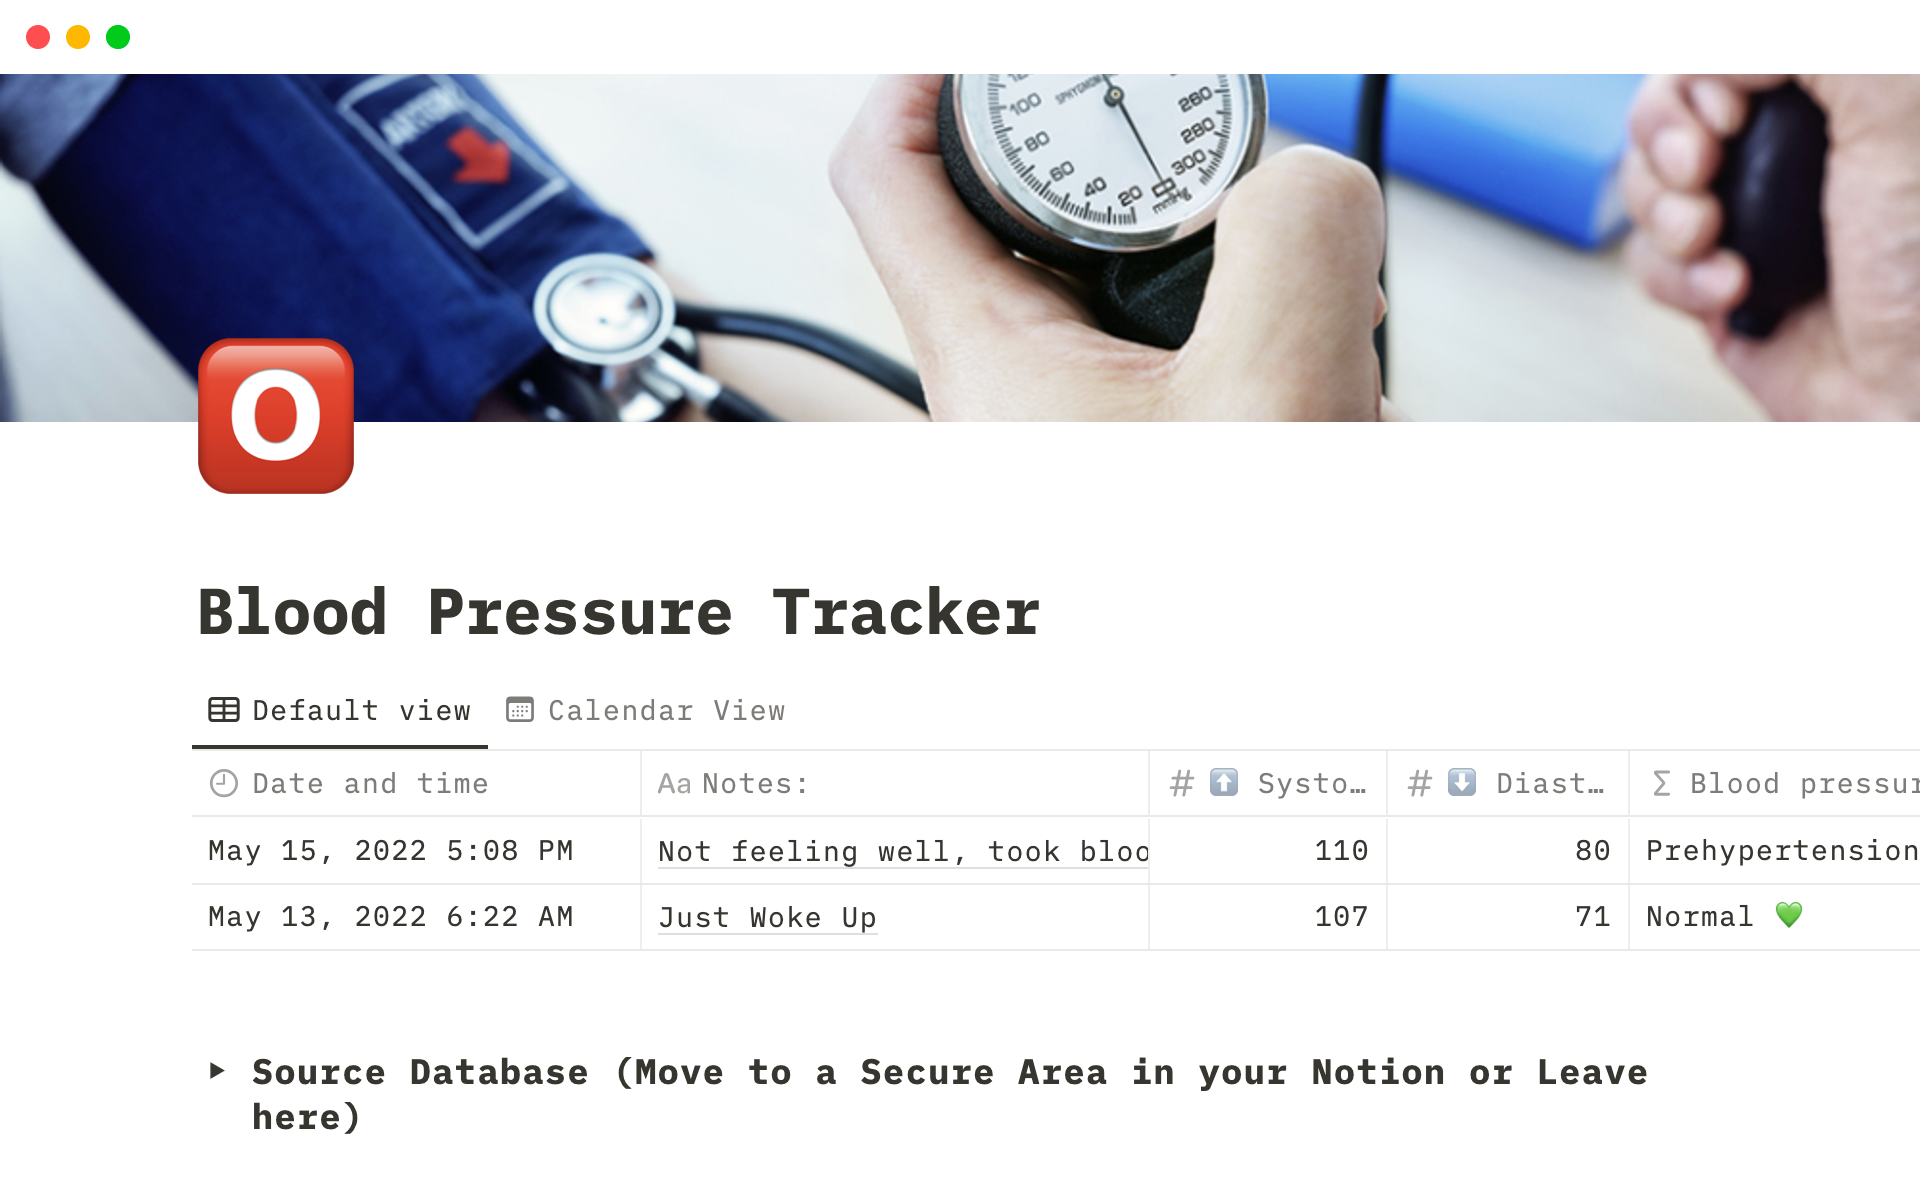 Aperçu du modèle de Blood Pressure Tracker